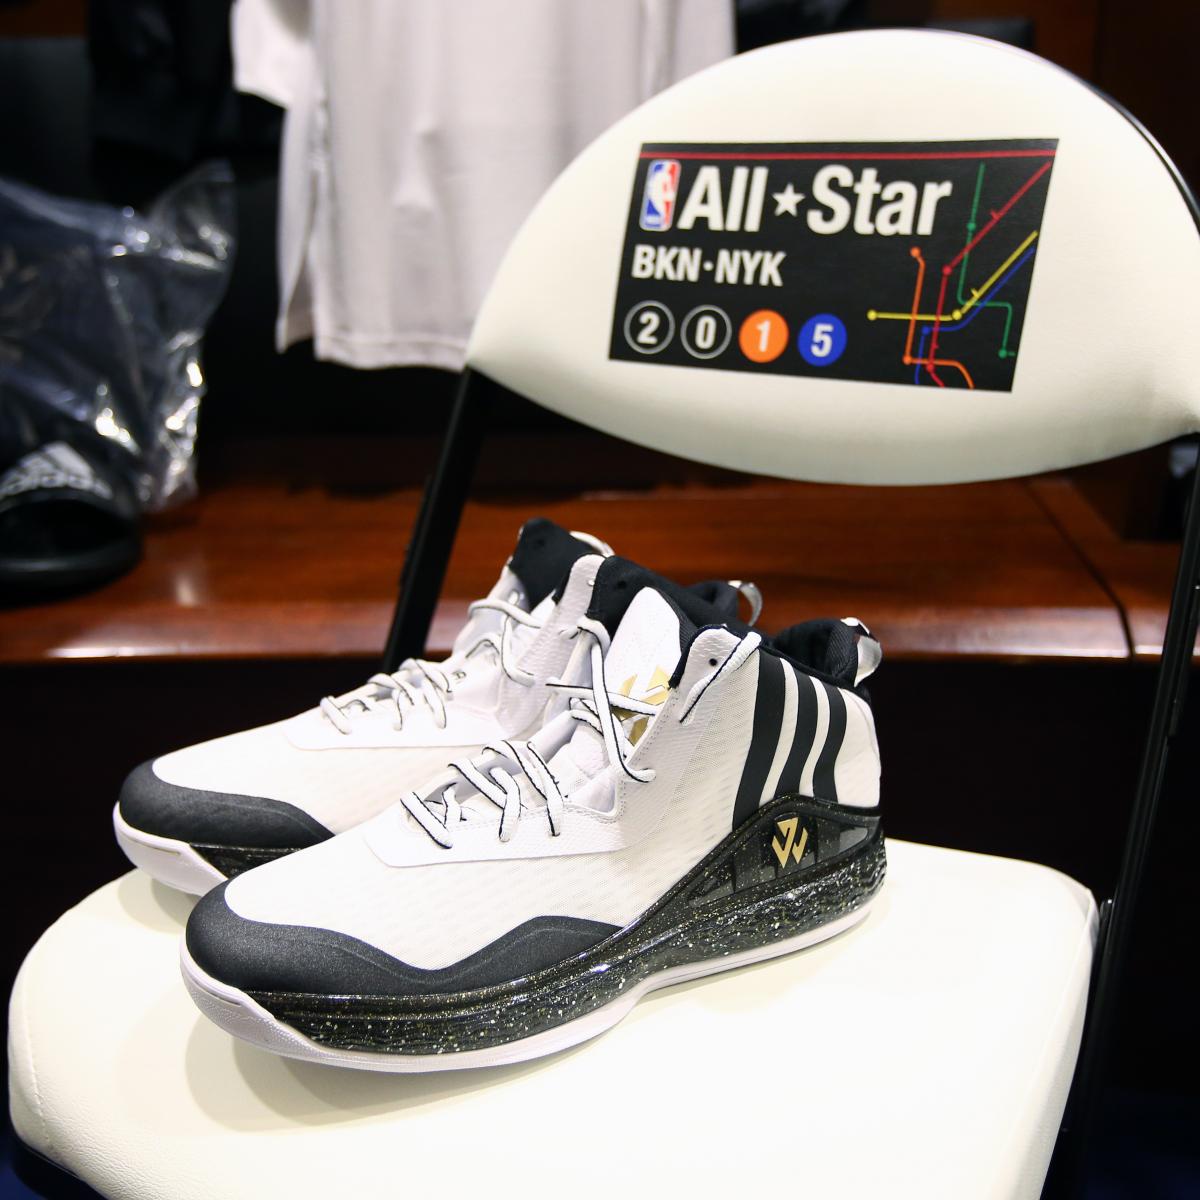 NBA Kicks On Fire: Paul George Wears Special Nike Hyperdunk 2015